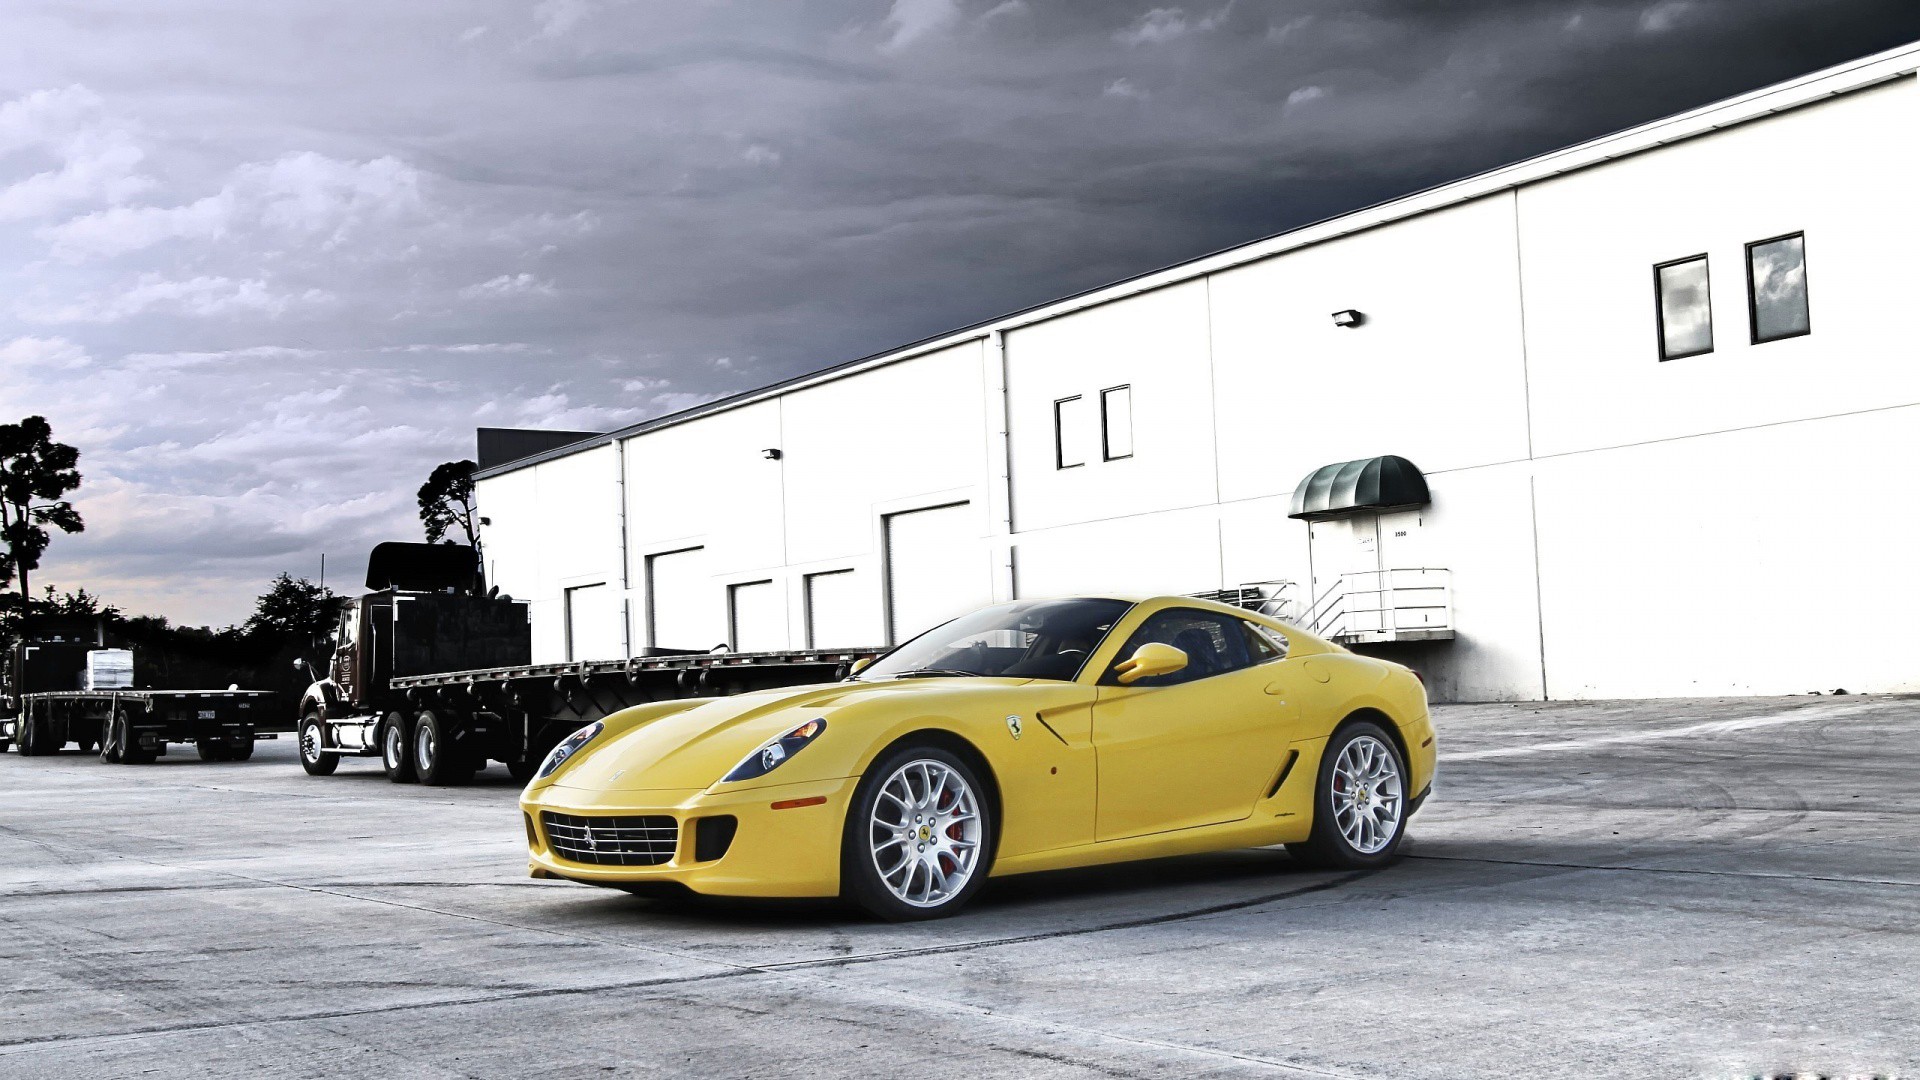 cars, Ferrari 599, Ferrari 599 GTB Fiorano, yellow cars - desktop wallpaper